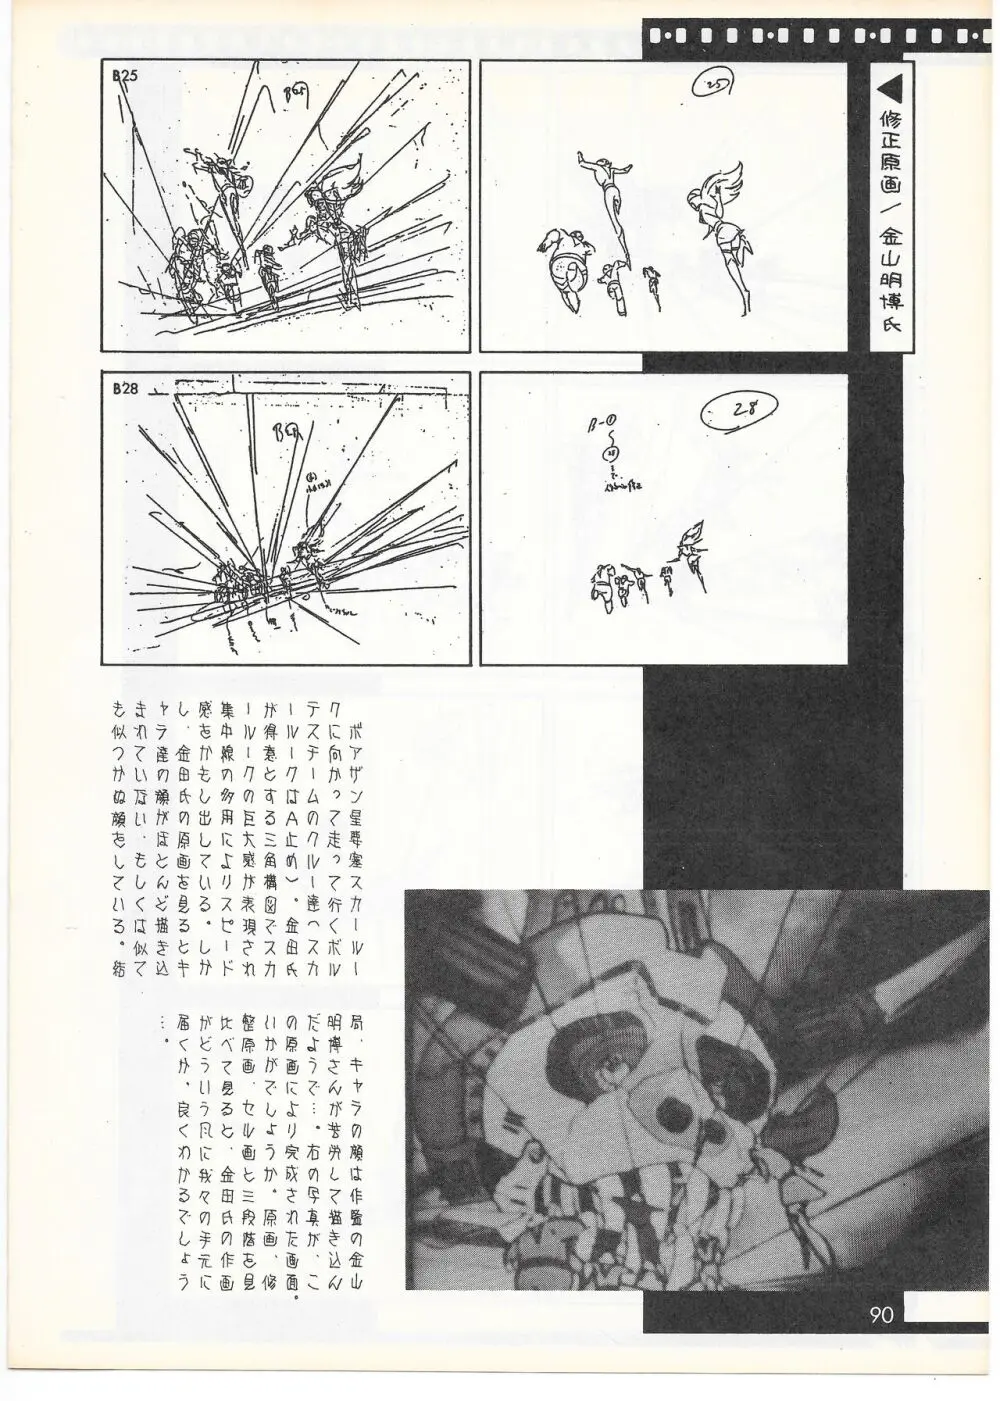 THE ANIMATOR 1 金田伊功特集号 87ページ